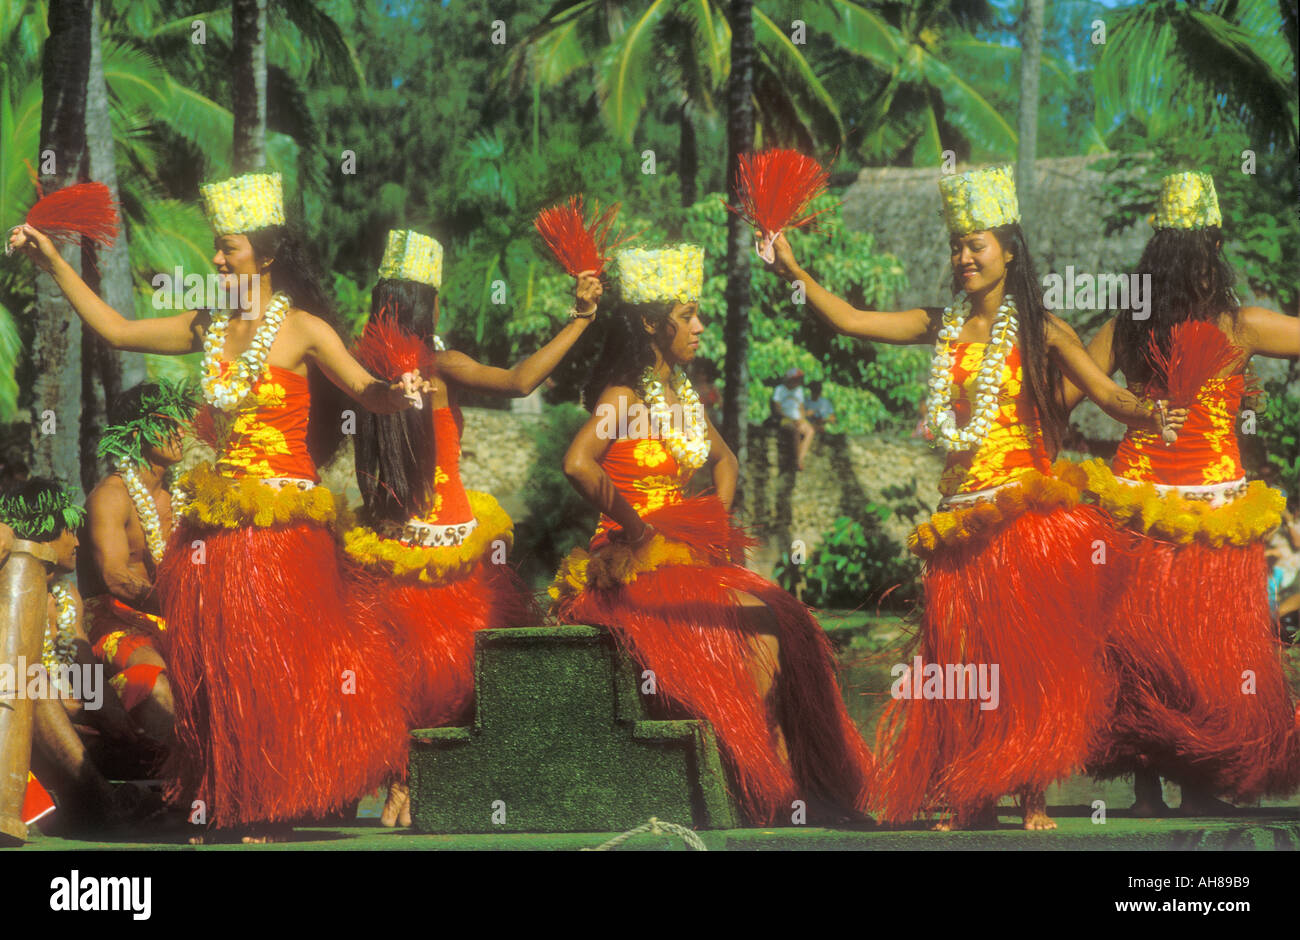 Hula Dancers on the Island of Oahu Hawaii USA Stock Photo